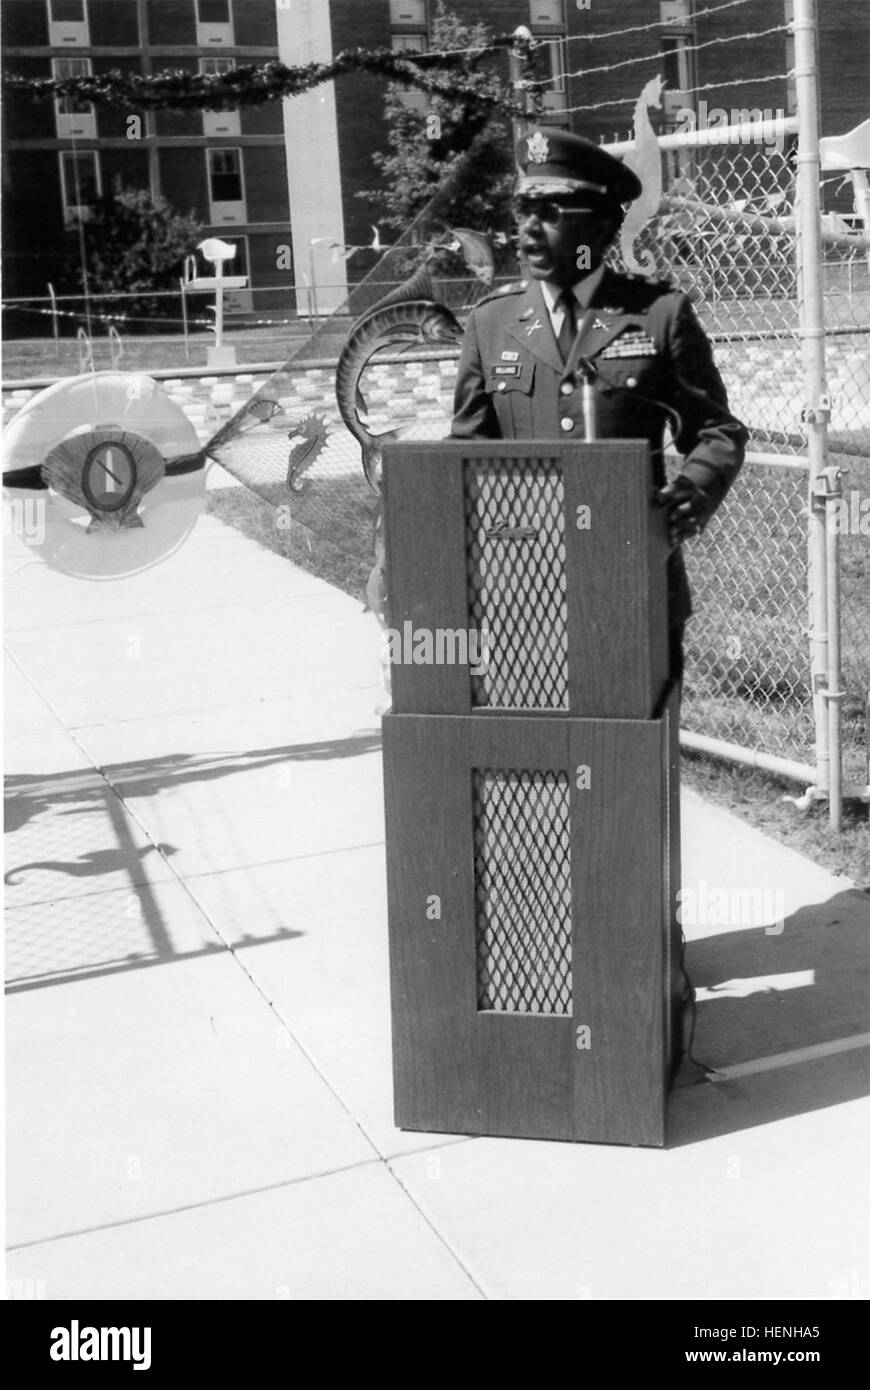 Then-Col. Harvey D. Williams assiste à une piscine la cérémonie au cours de son mandat en tant que commandant de poste à Fort Myer, Virginie, il était le commandant de poste de 1975 à 1977. JBM-HH riche de droits civils premières 140228-A-ZZ999-150 Banque D'Images